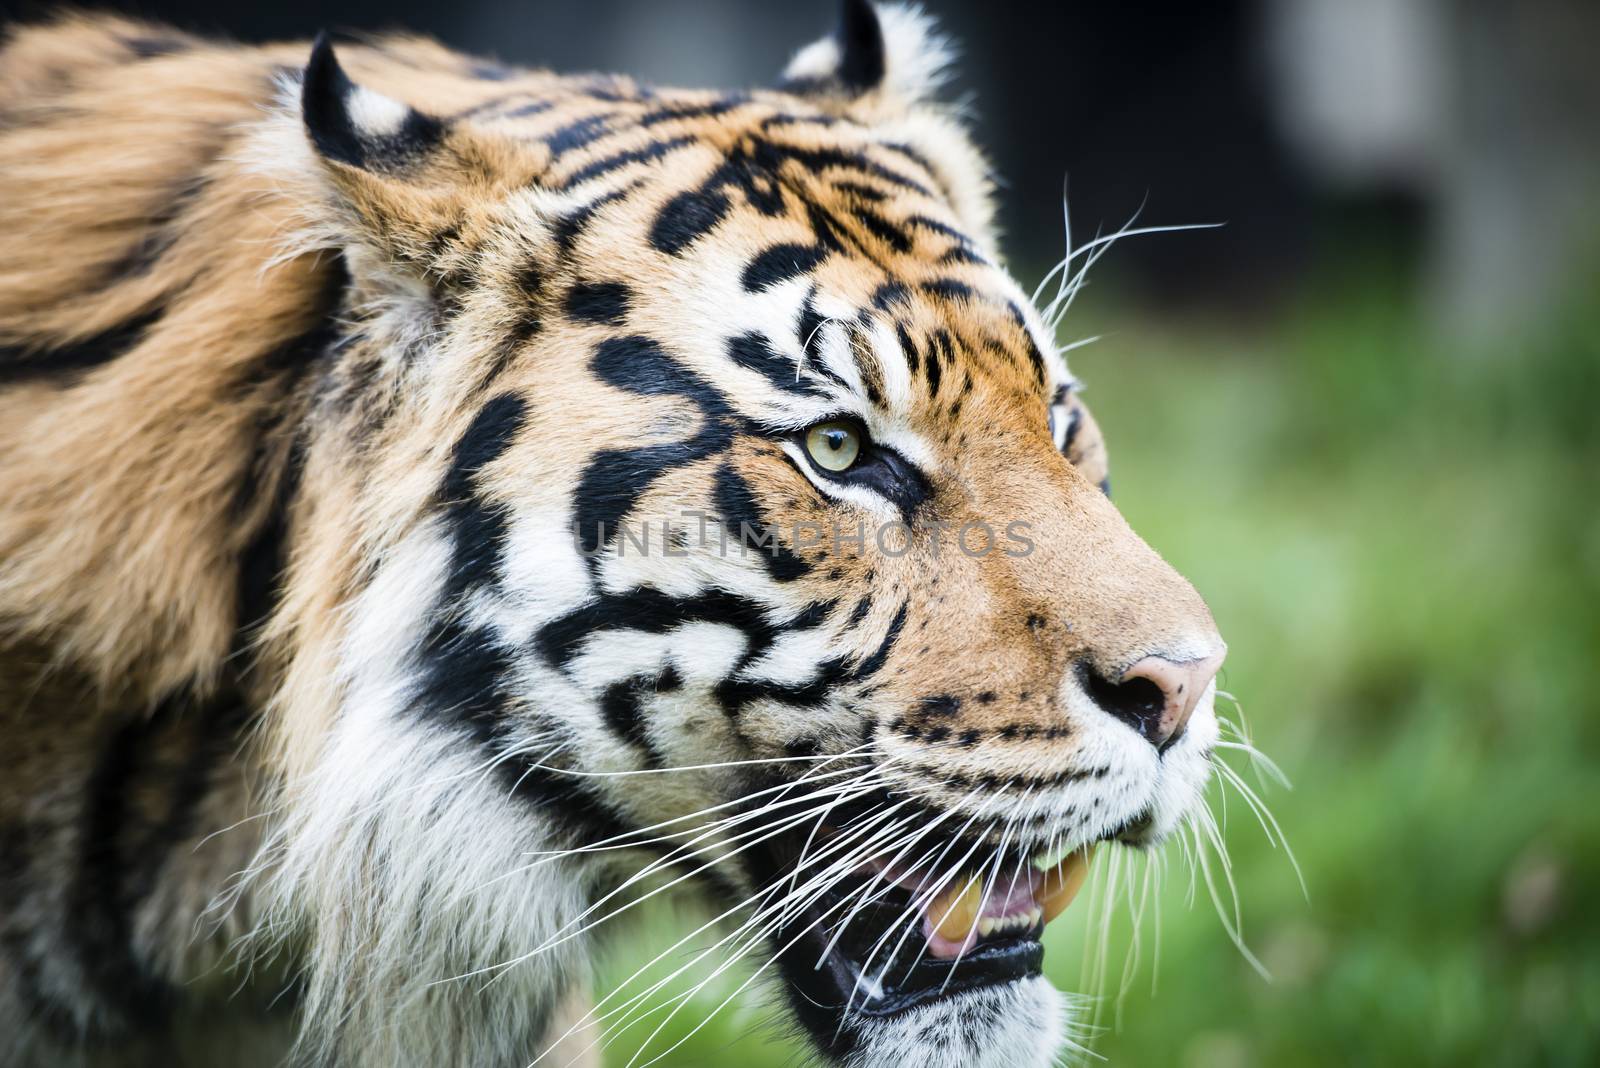 Encounter with Sumatran tiger by MohanaAntonMeryl